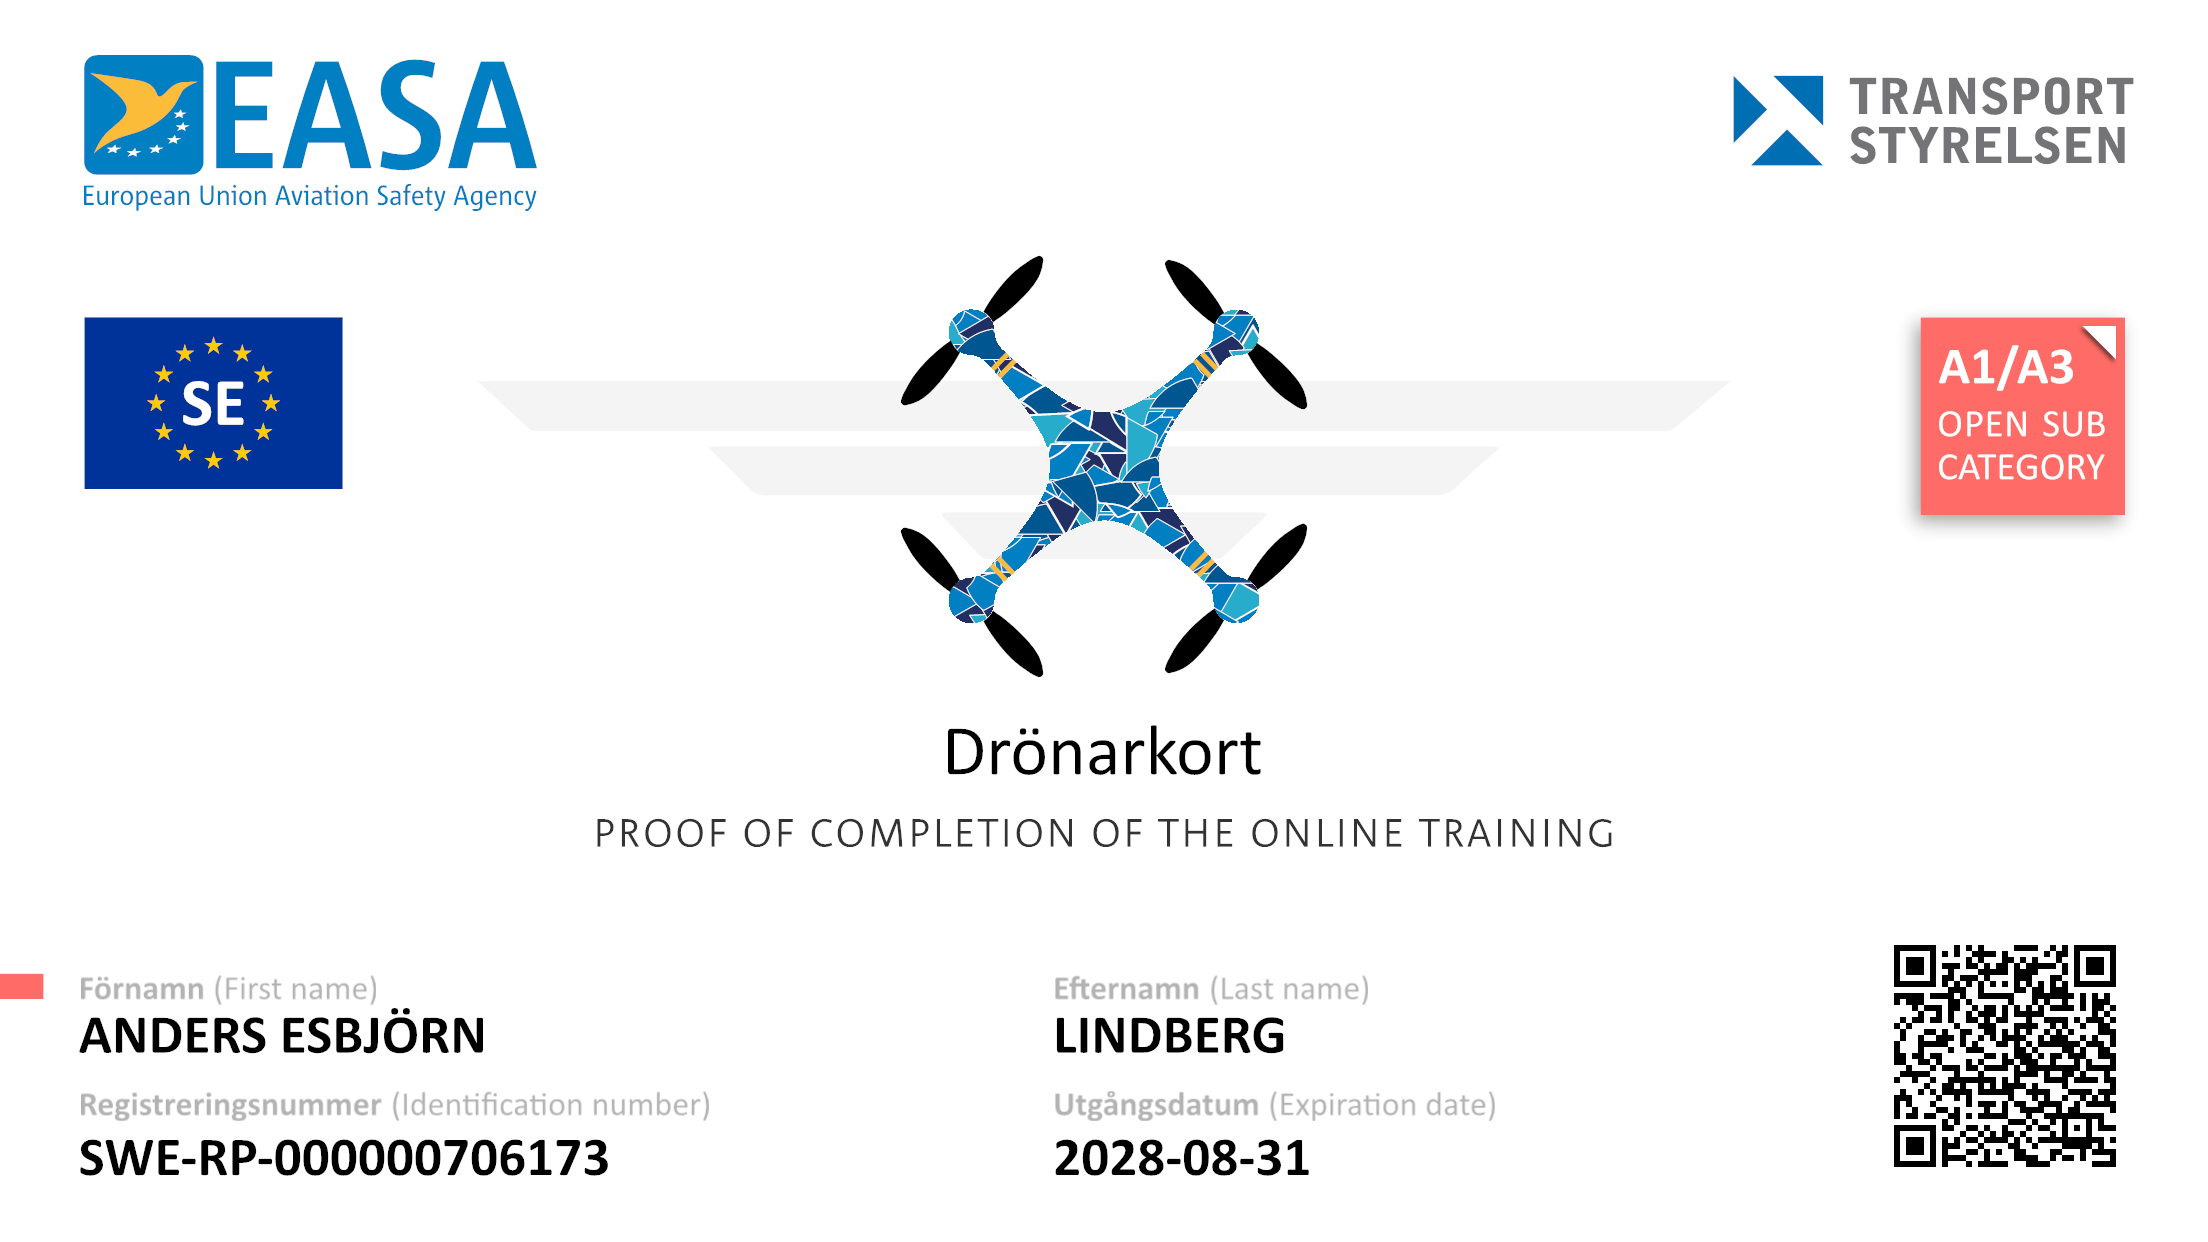 droneCard